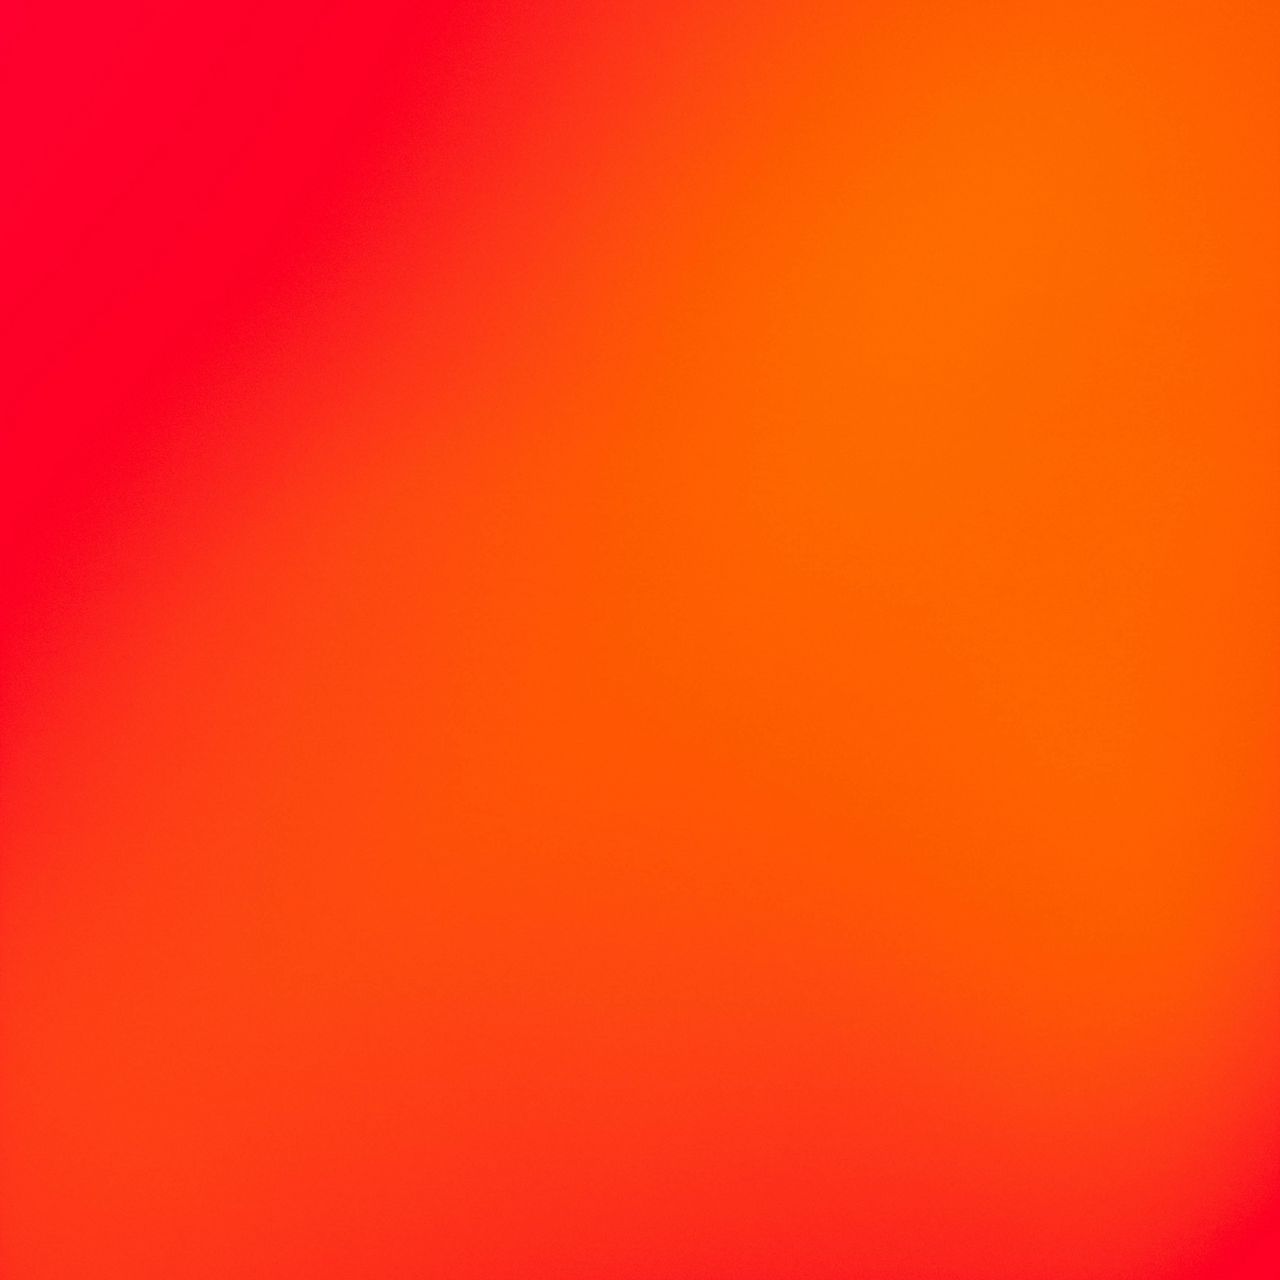 Bạn muốn có một không gian nổi bật với hình nền độc đáo? Với hình nền màu đỏ cam sáng dần, bạn sẽ tạo được một không khí ấm áp và tràn đầy cảm hứng cho không gian của mình.